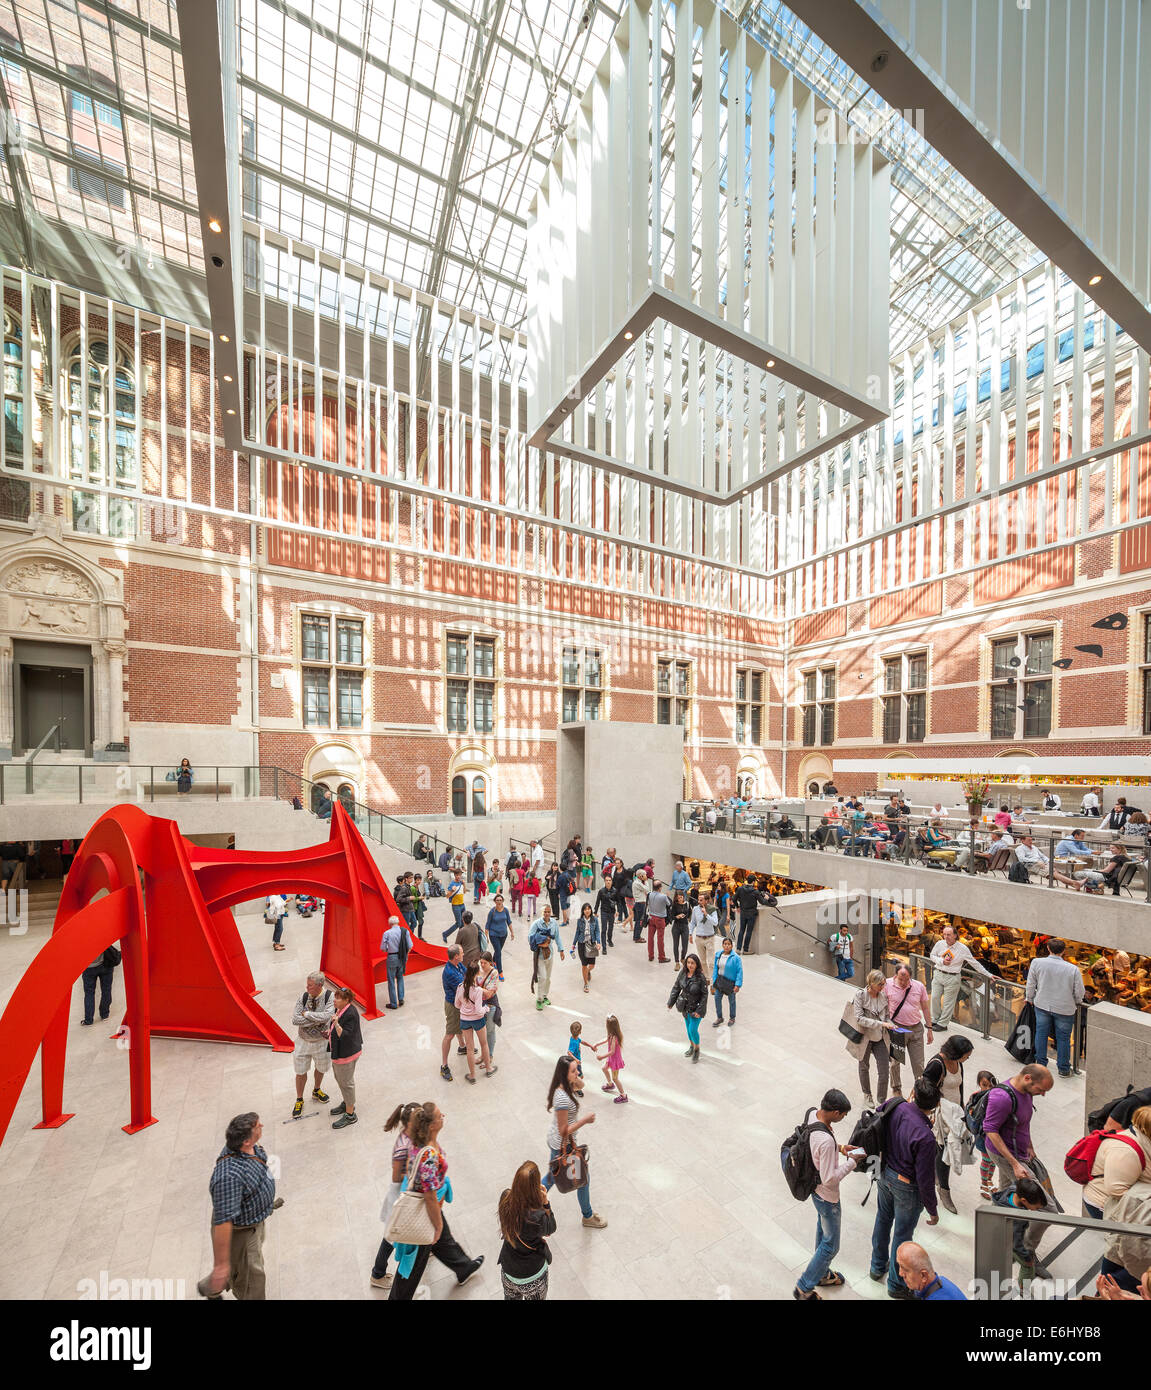 Rijksmuseum Amsterdam. Die Eingangshalle Hall des Rijksmuseums renovierten (2003-2013), mit einer Skulptur von Calder und Besucher Stockfoto